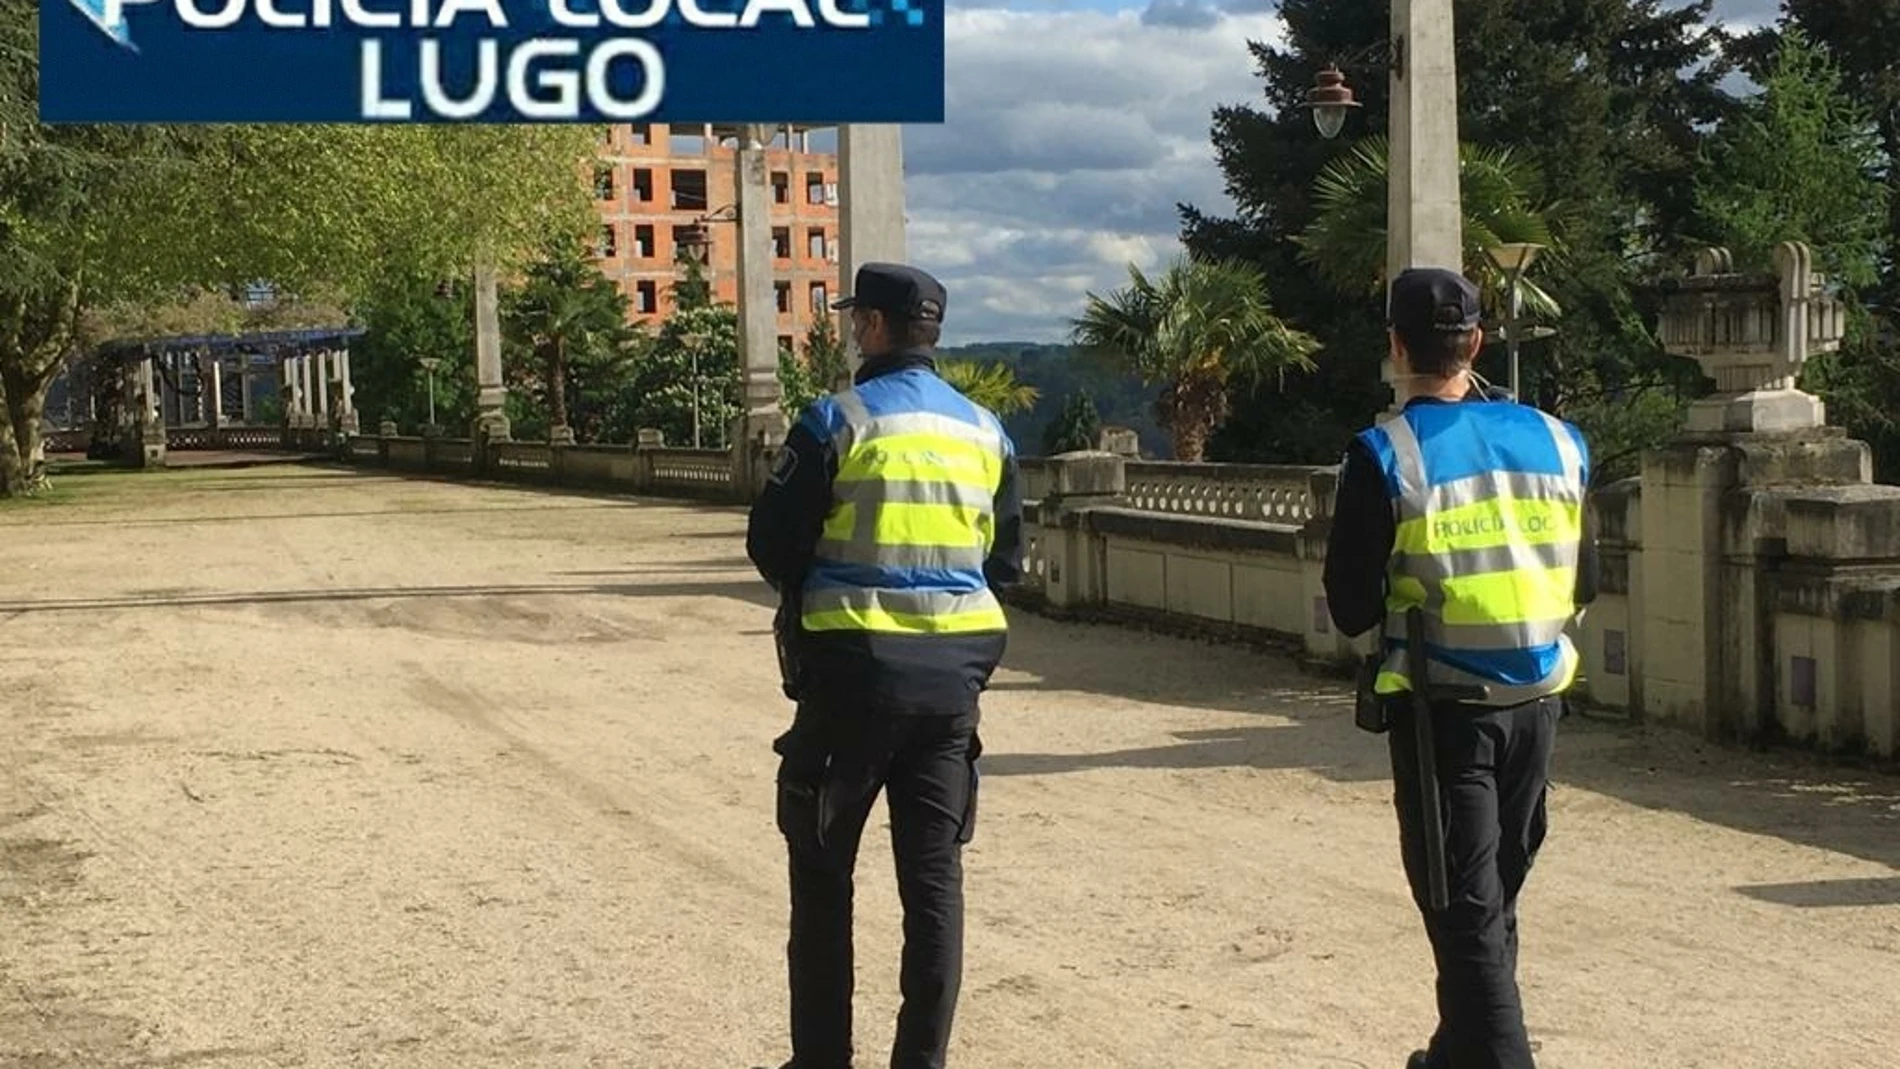 Agentes de la Policía Local de Lugo